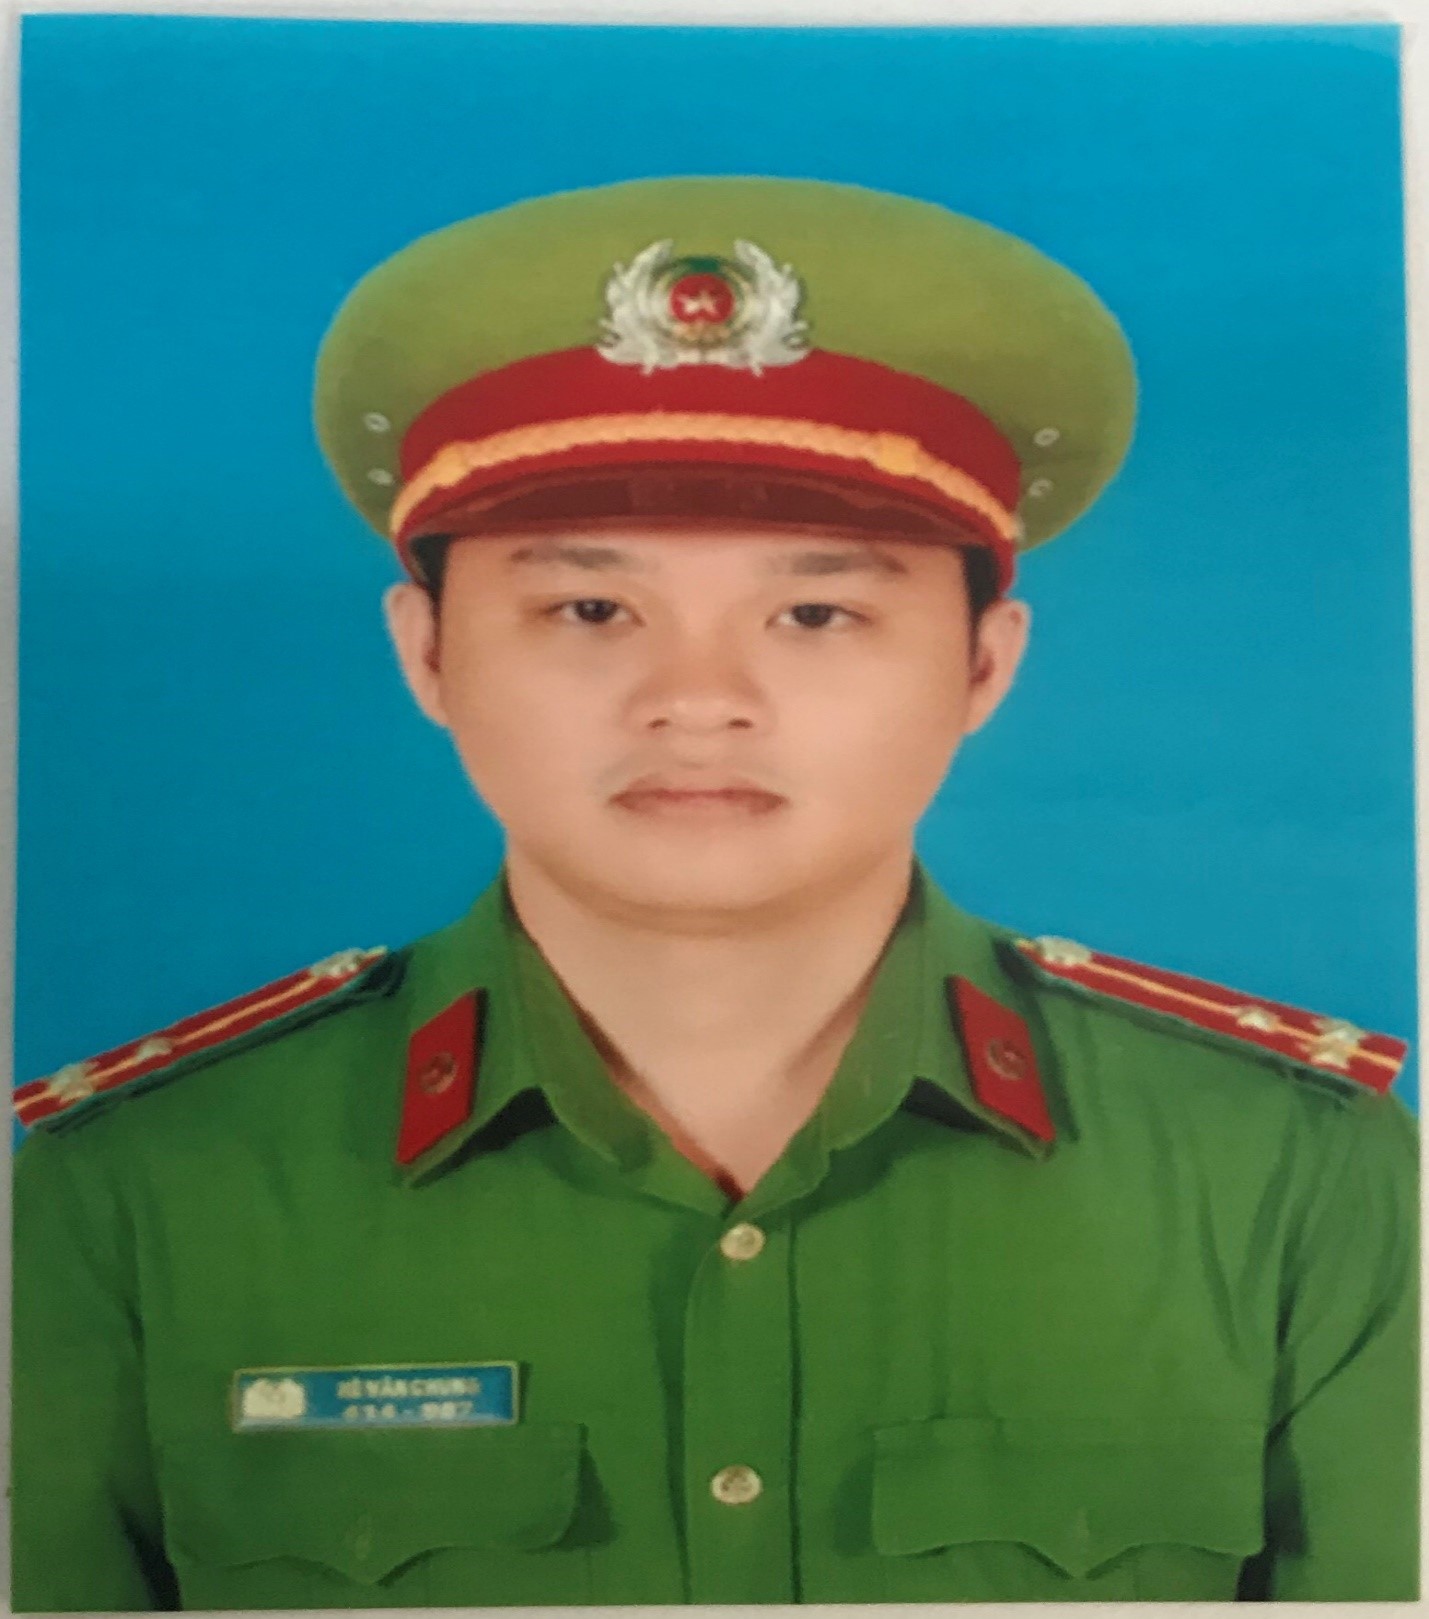 Thượng úy Hè Văn Chung, Phó trưởng Công an xã điển hình tiên tiến trong phong trào phòng chống tệ nạn xã hội trên địa bàn xã Cầu Khởi